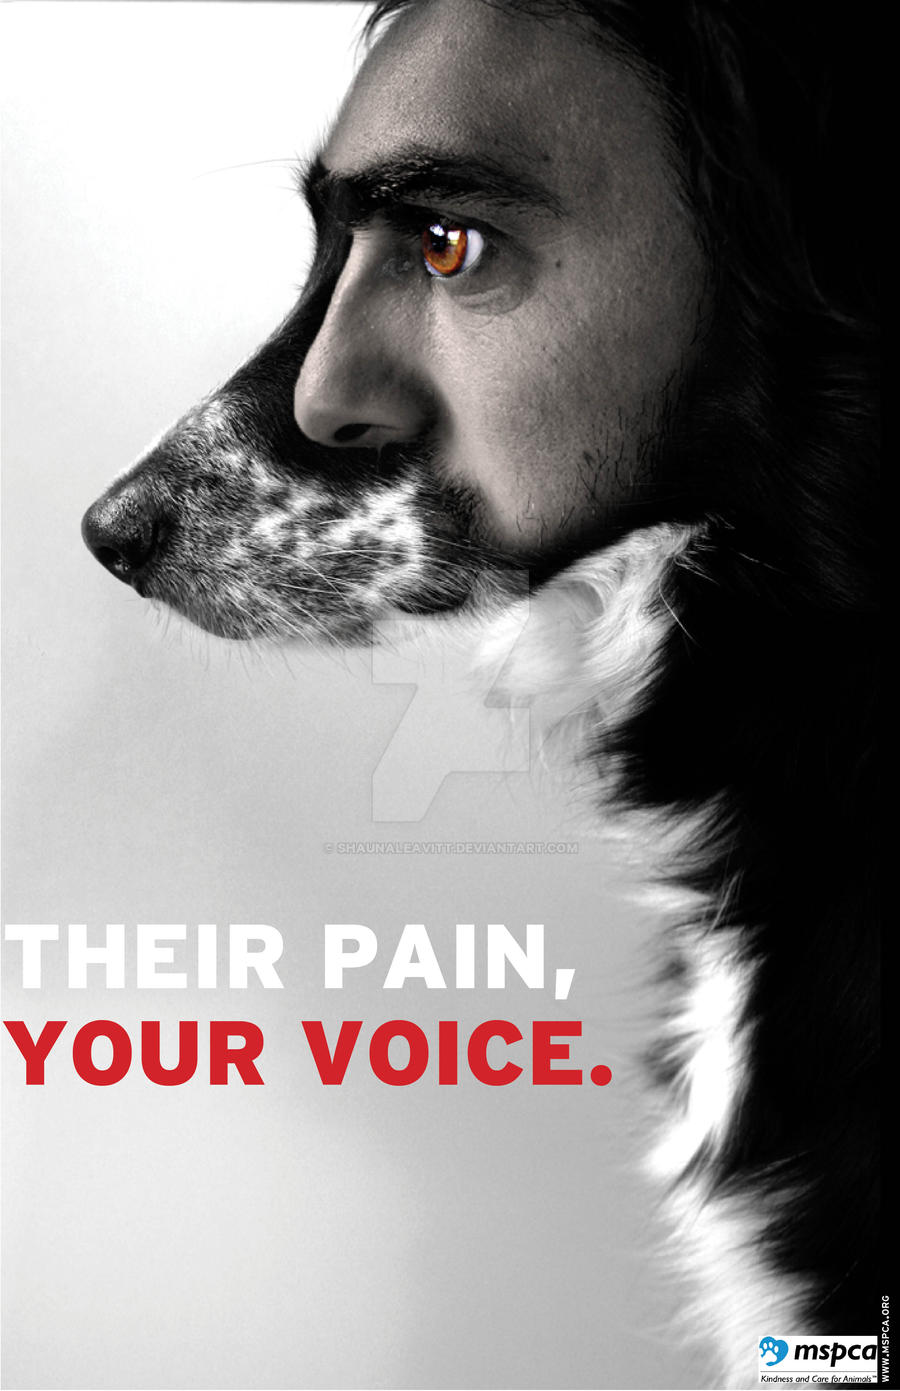 Animal Rights Poster 1 by ShaunaLeavitt on DeviantArt